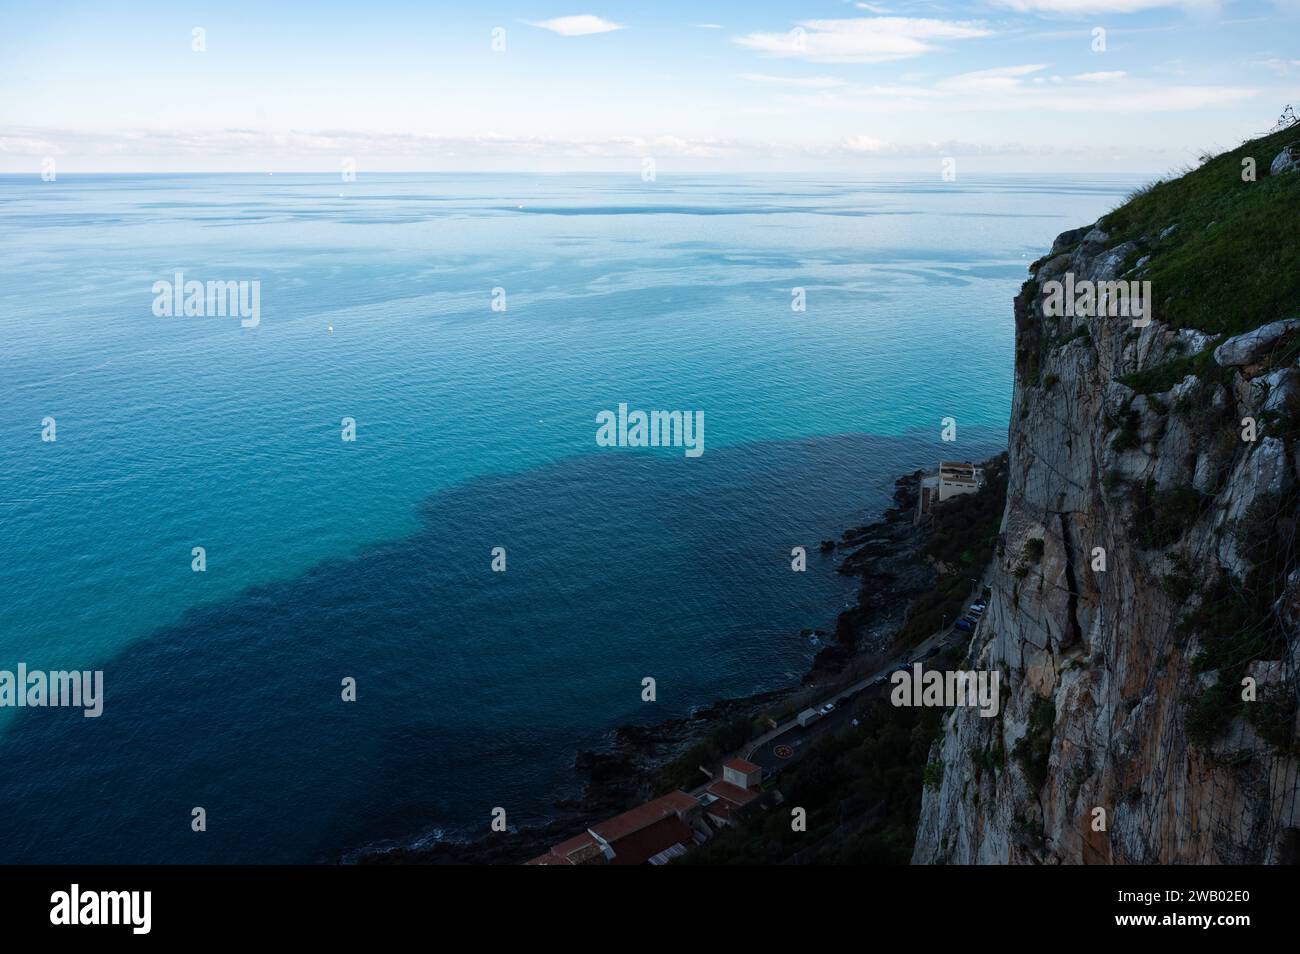 Vista dall'alto su una scogliera ripida e sul mare blu a Cefalù, Sicilia, Italia Foto Stock